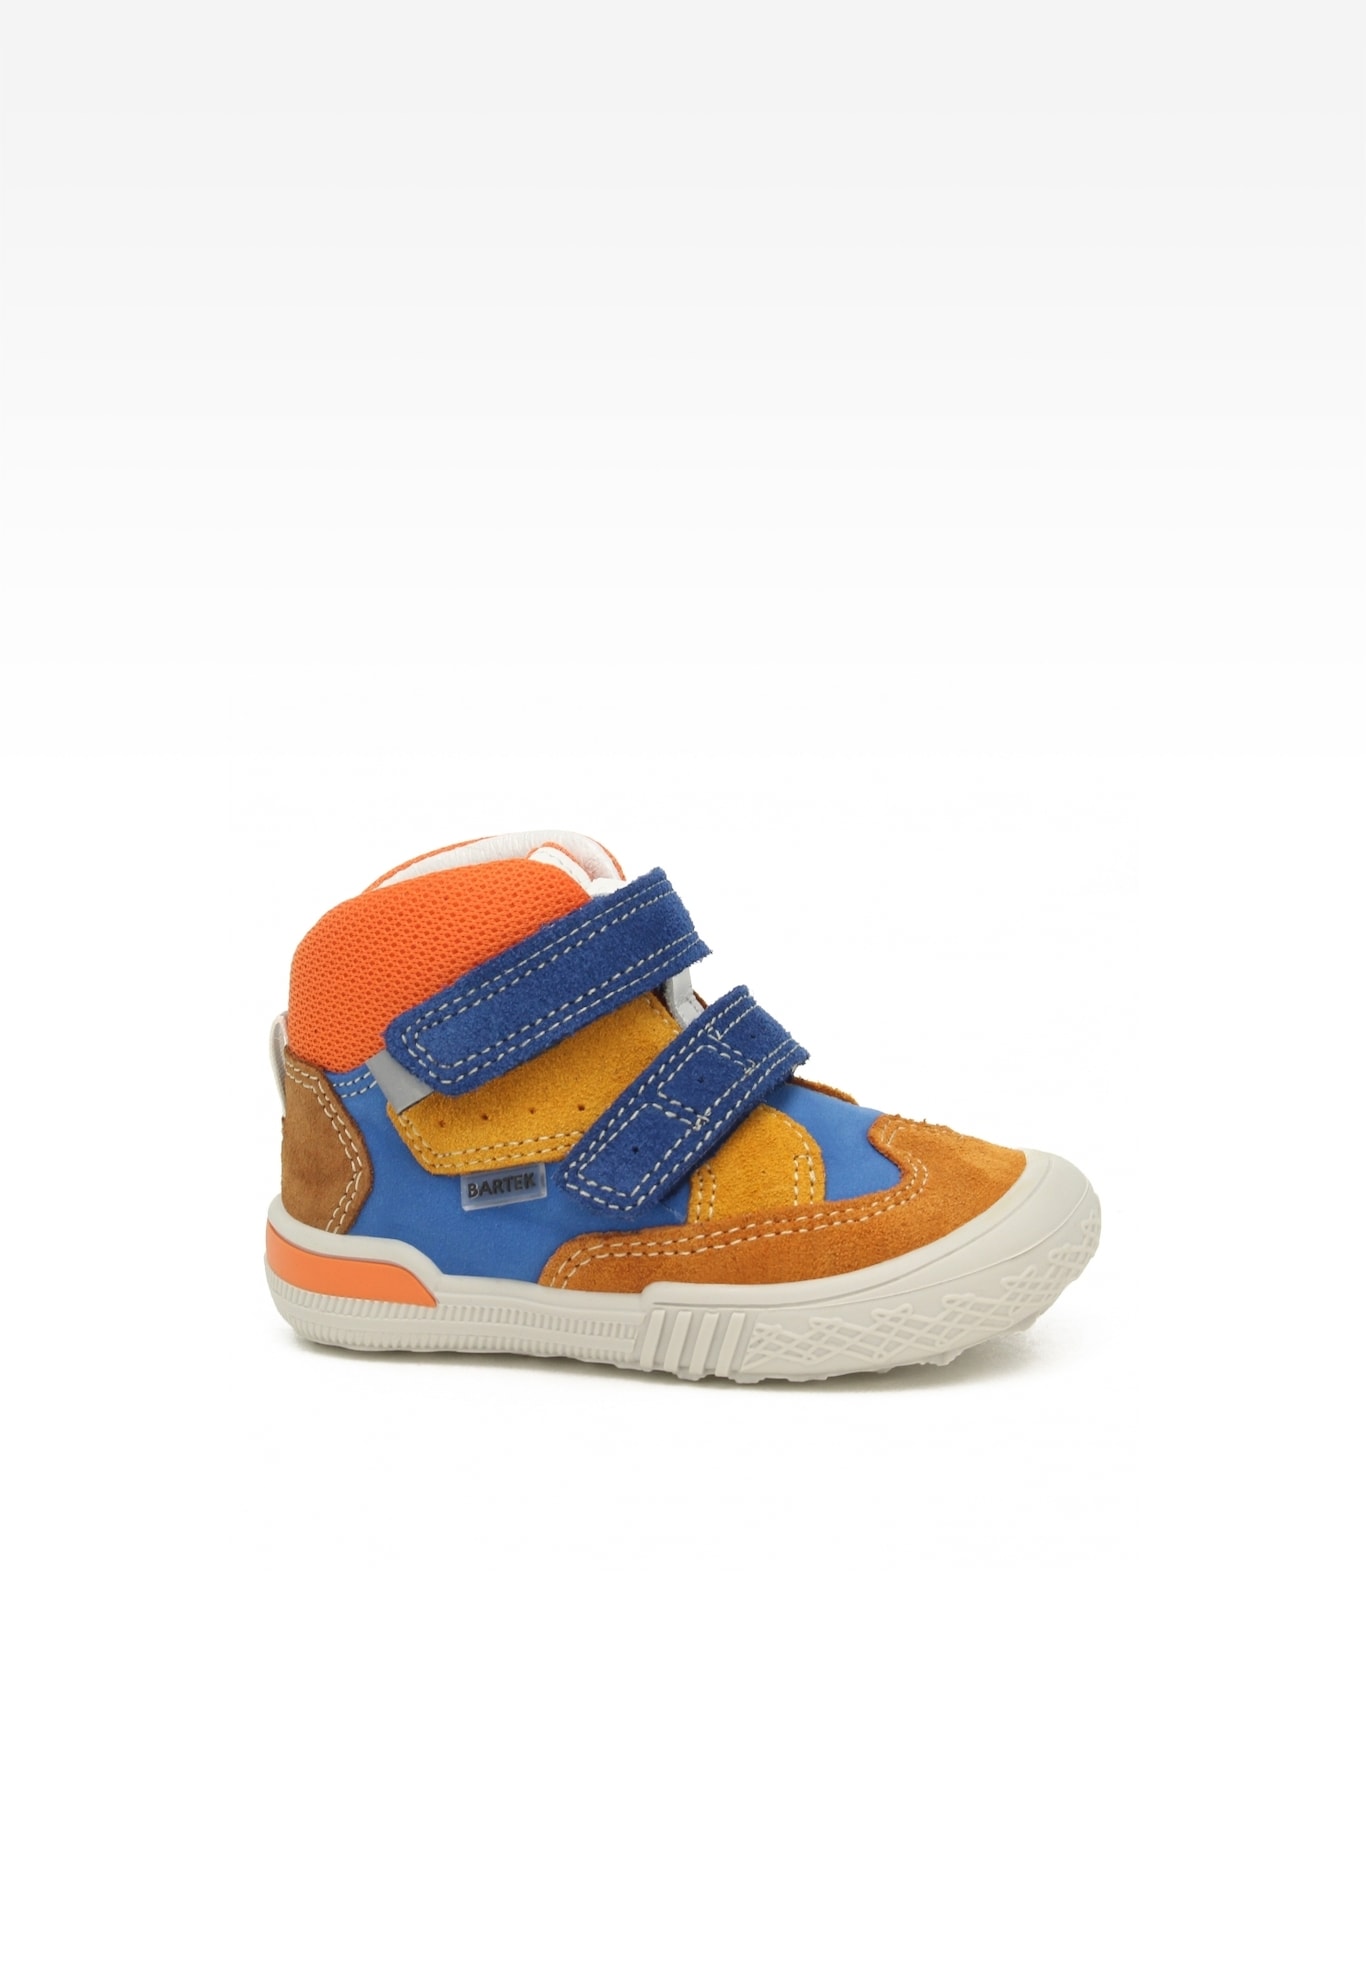 Sneakers BARTEK 21704-032, dla chłopców, pomarańczowo-granatowy